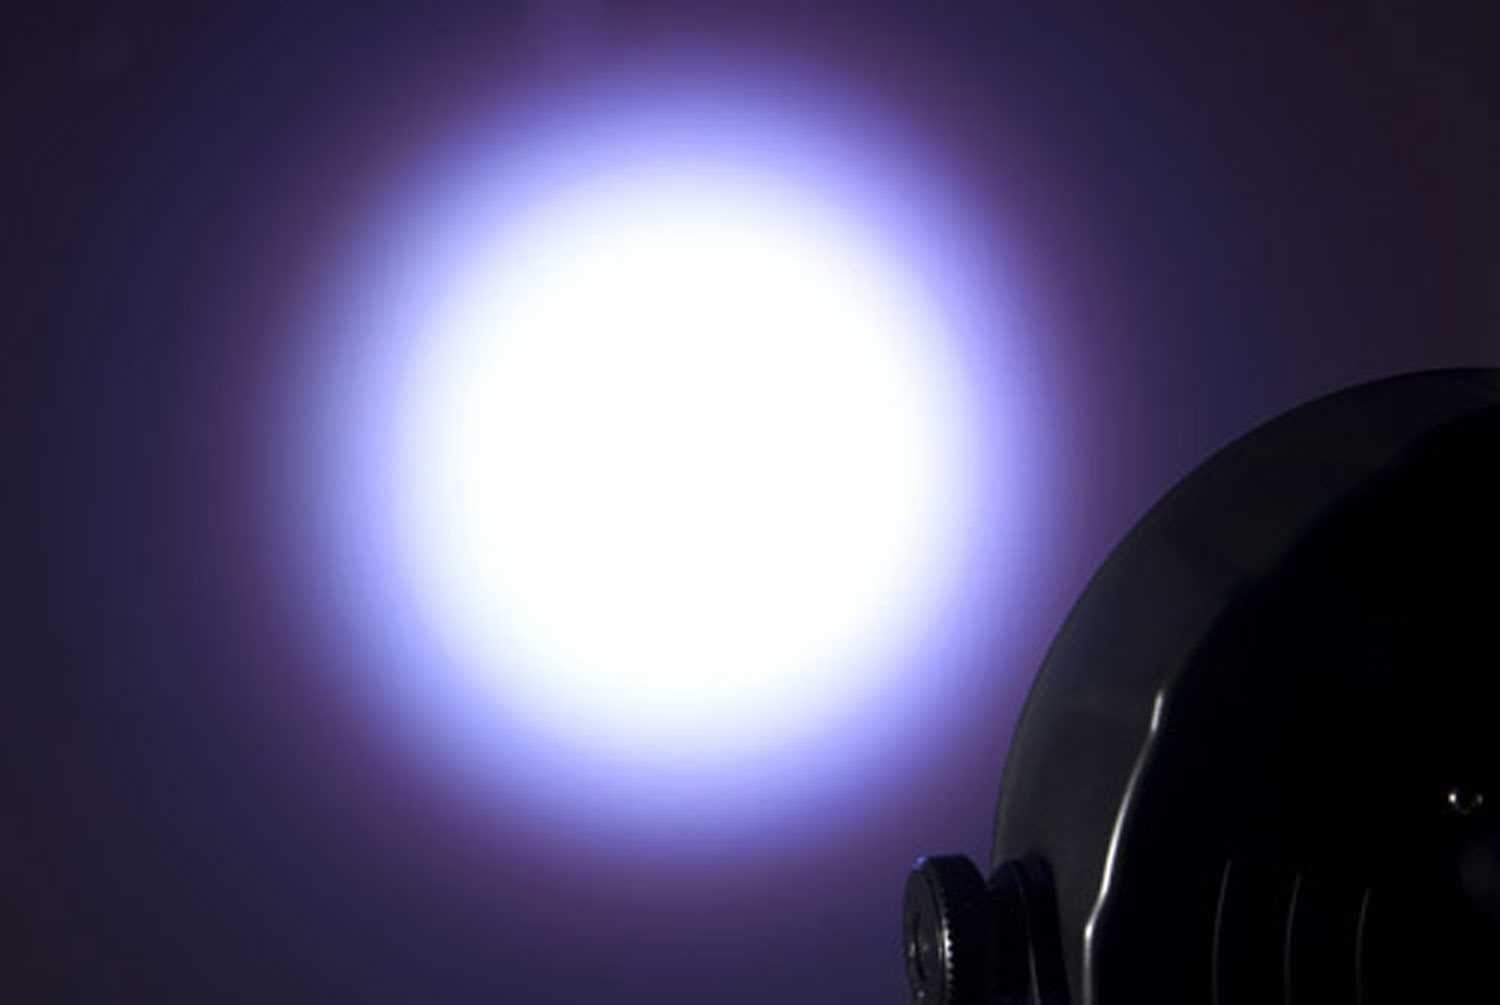 Chauvet SlimPAR 64 RGB LED Par Can Wash Light - PSSL ProSound and Stage Lighting